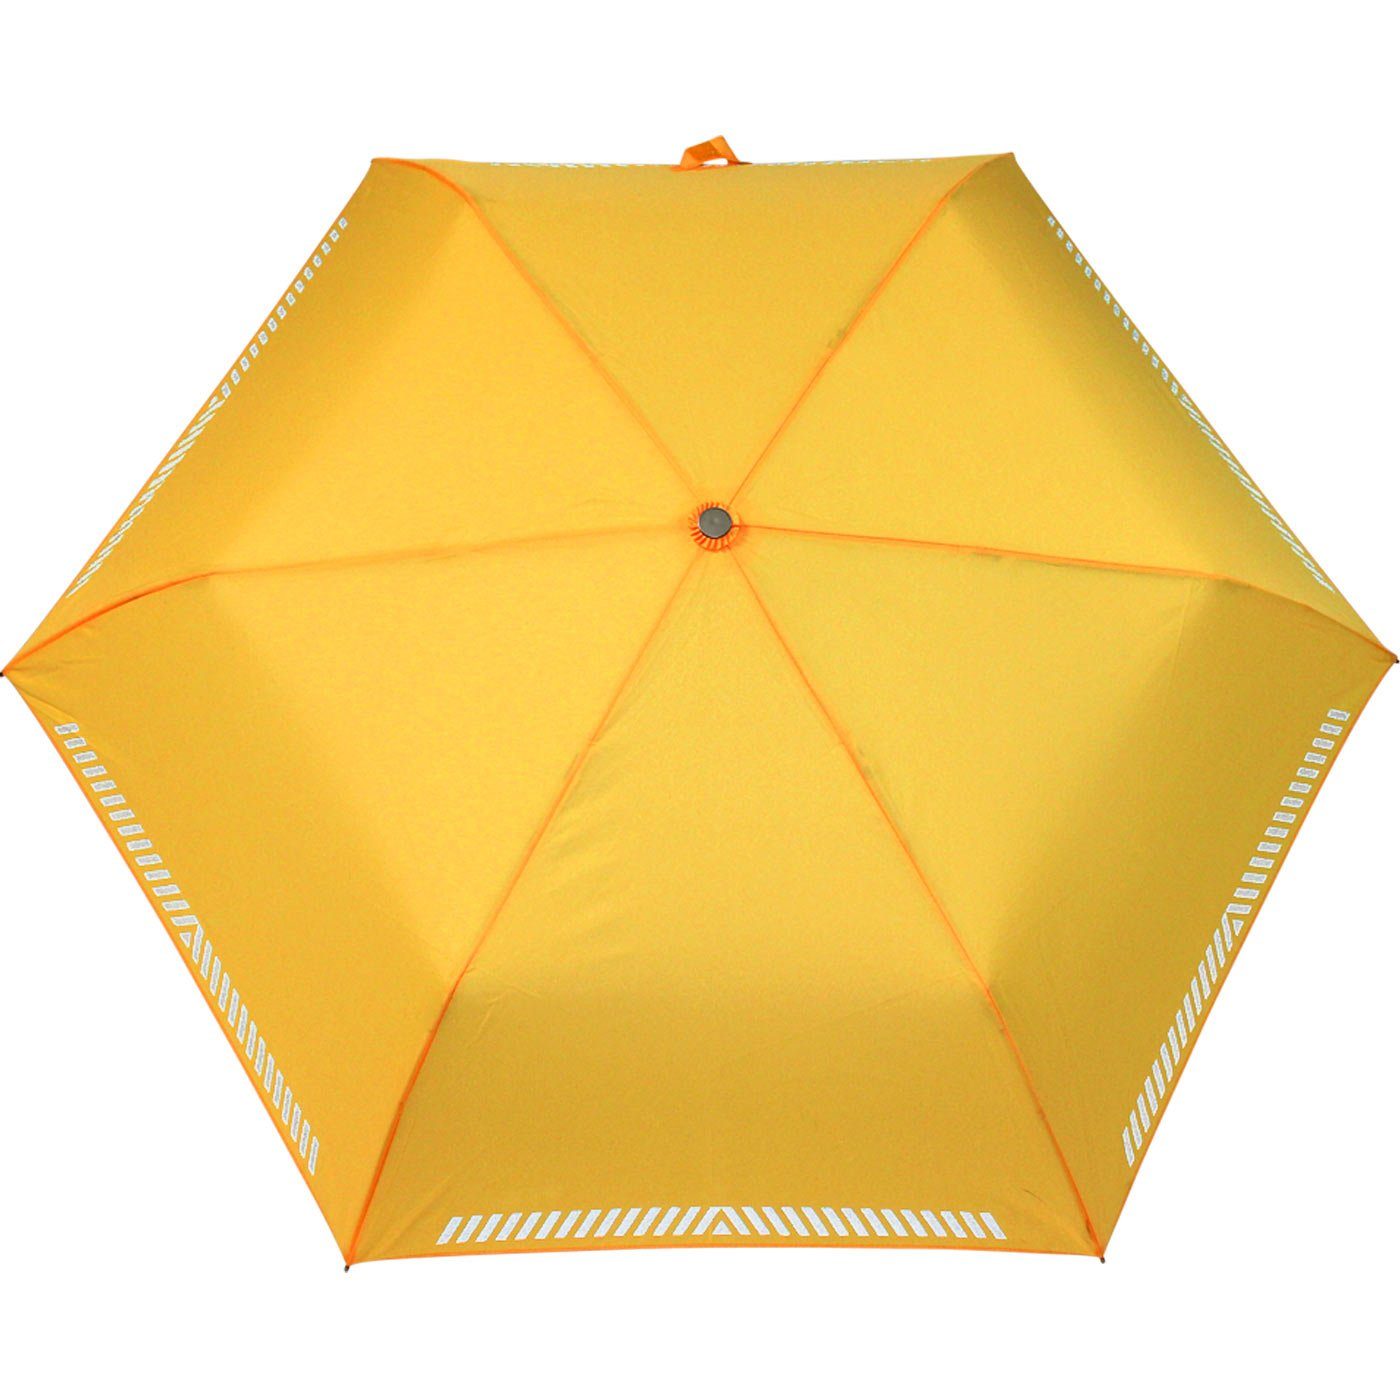 iX-brella Taschenregenschirm Mini Kinderschirm neon-gelb extra reflektierend leicht, Safety Reflex